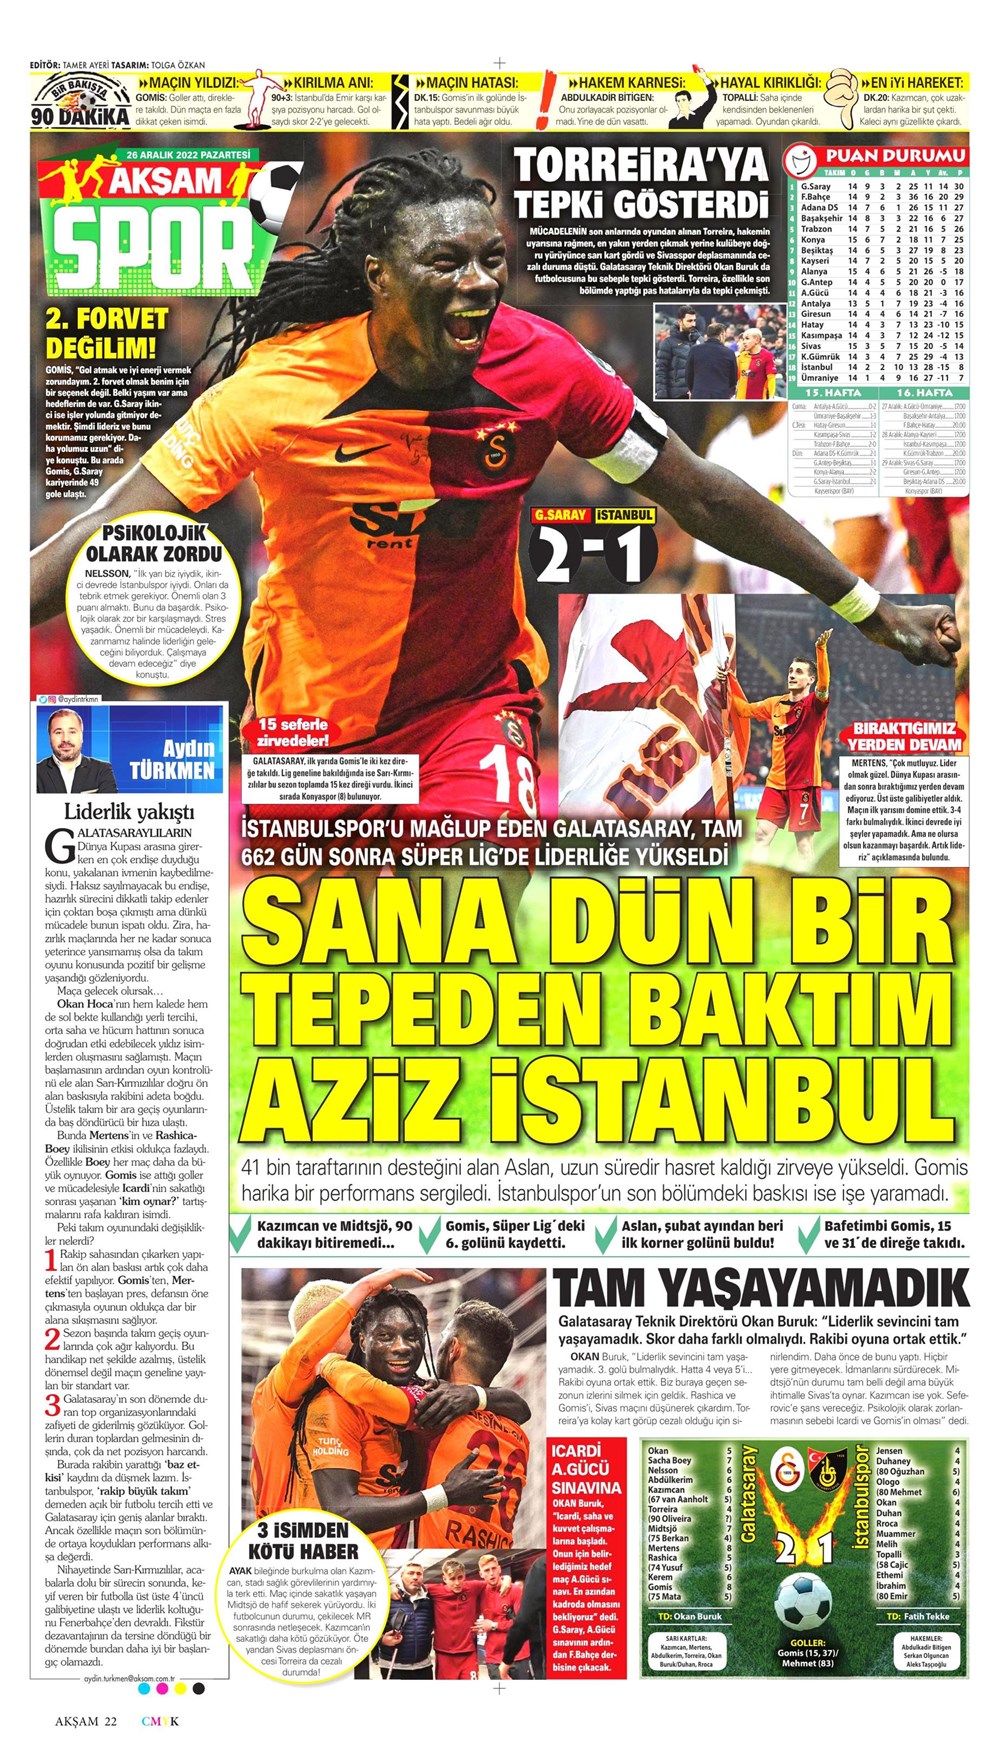 Beşiktaş'tan Gaziantep FK maçı biletlerine Cumhurriyet Bayramı'na özel  fiyat - Tele1